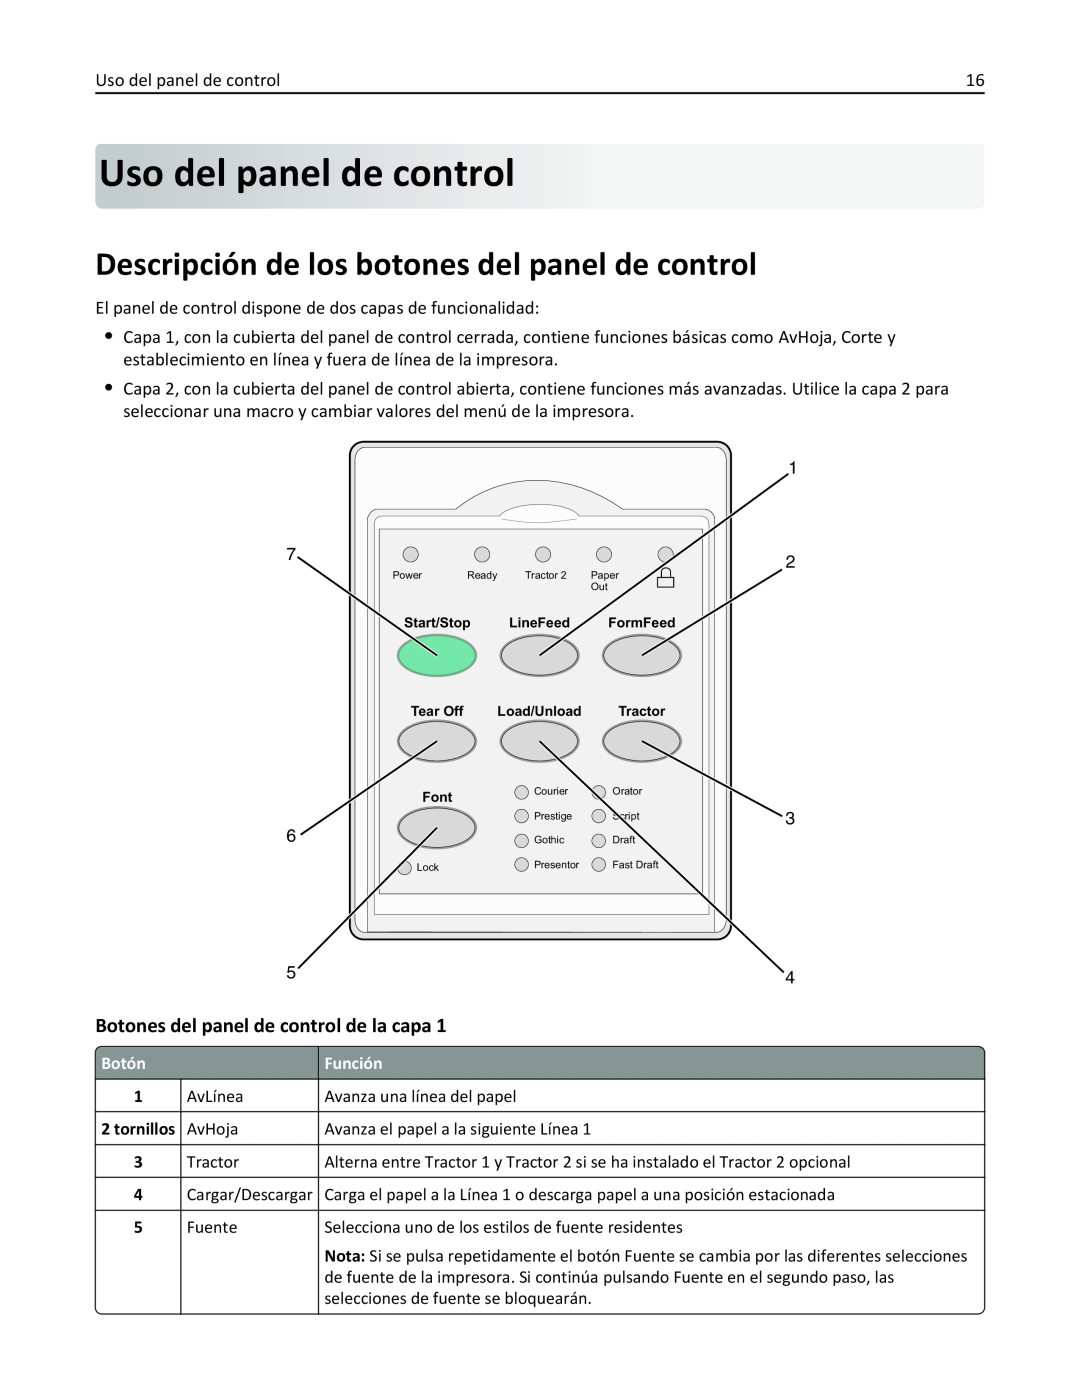 Lexmark 2500 manual Uso del panelde control, Descripción de los botones del panel de control 